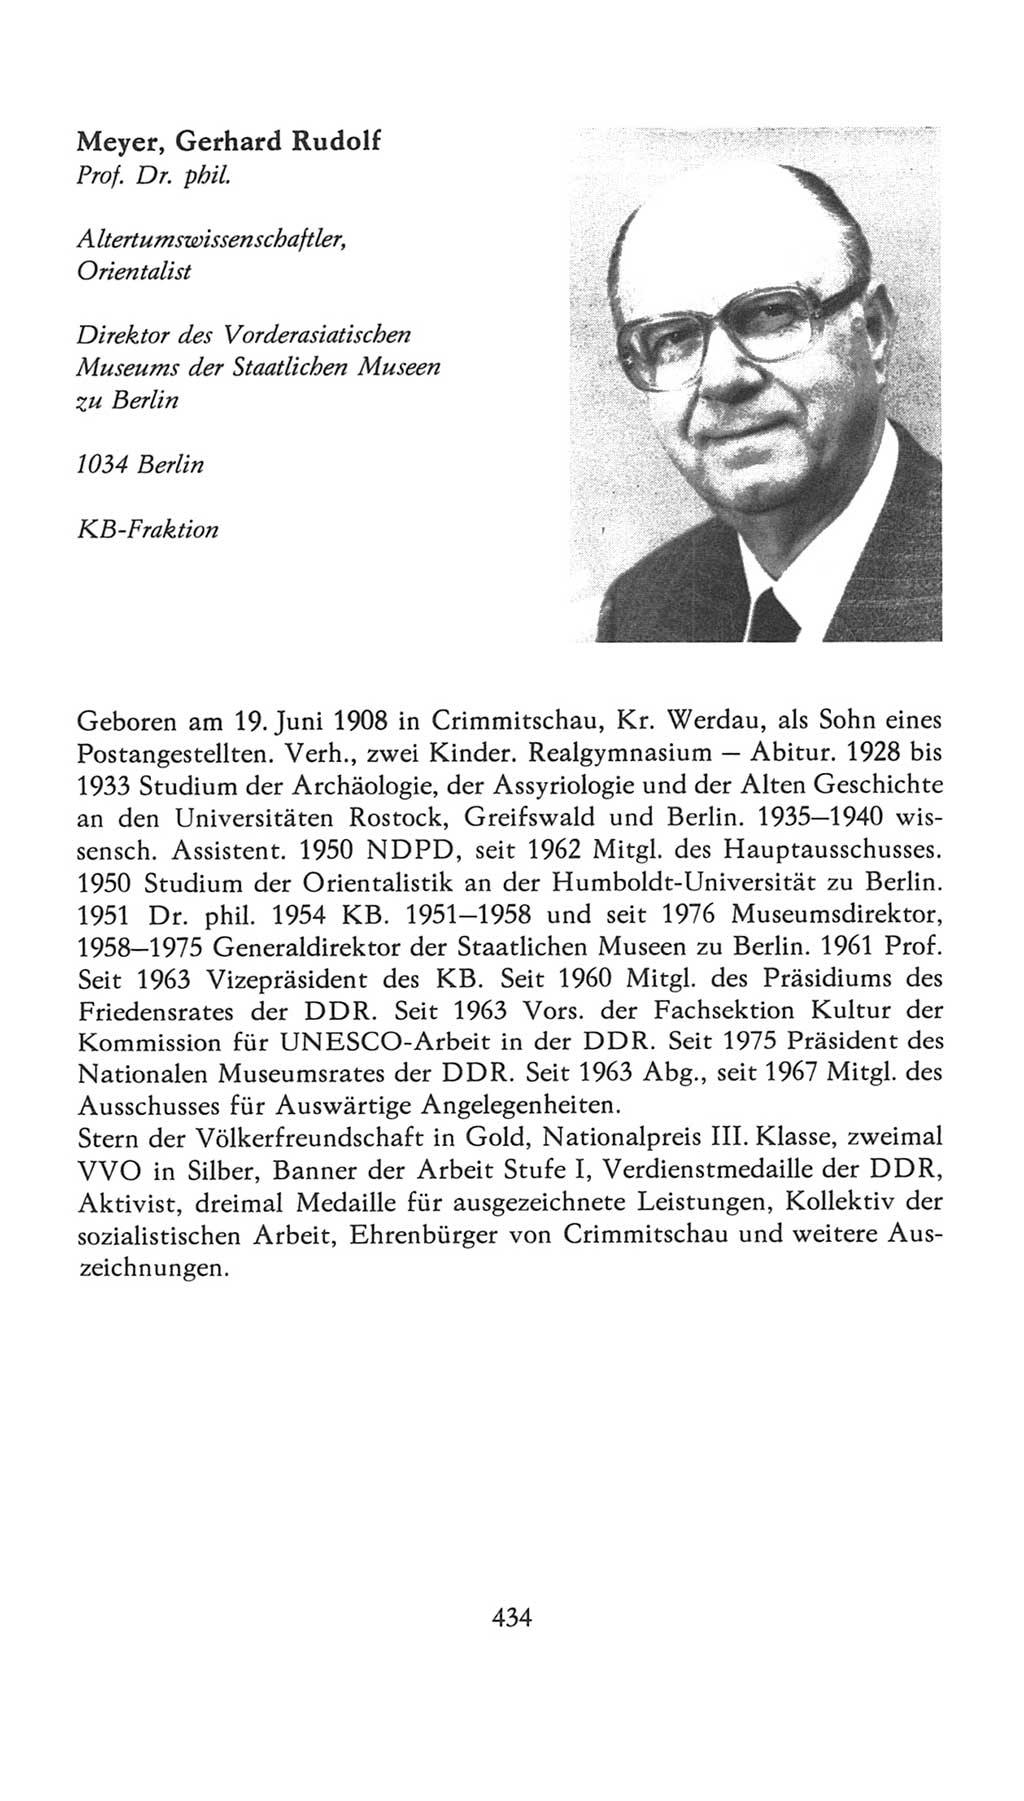 Volkskammer (VK) der Deutschen Demokratischen Republik (DDR), 7. Wahlperiode 1976-1981, Seite 434 (VK. DDR 7. WP. 1976-1981, S. 434)